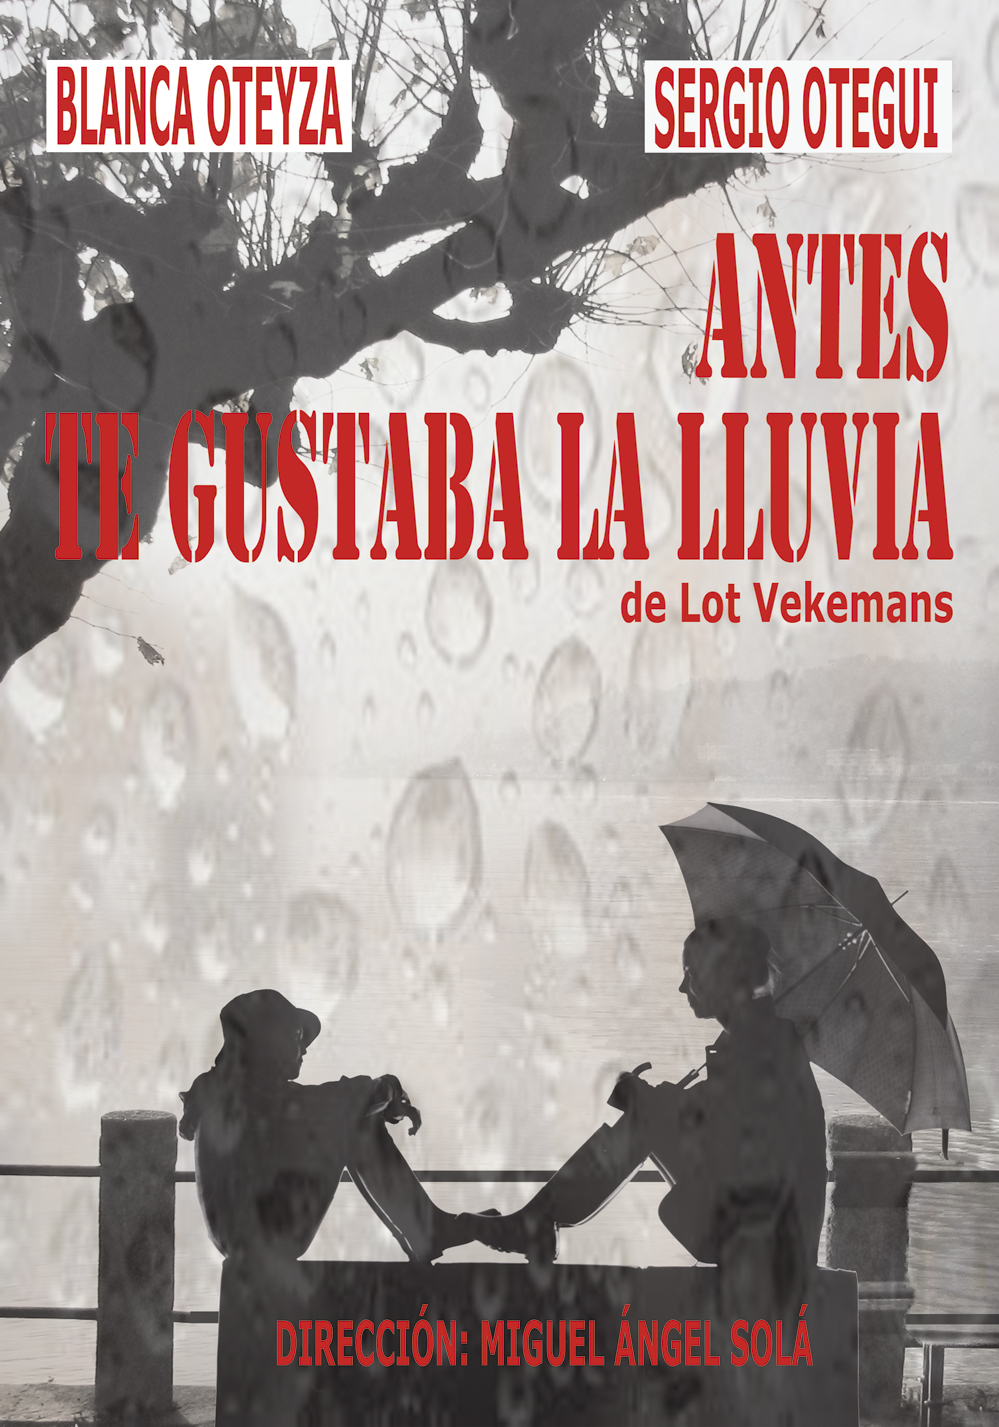 La obra teatral Antes te gustaba la lluvia se estrena mañana viernes 10 en Teatro Rosalía Castro